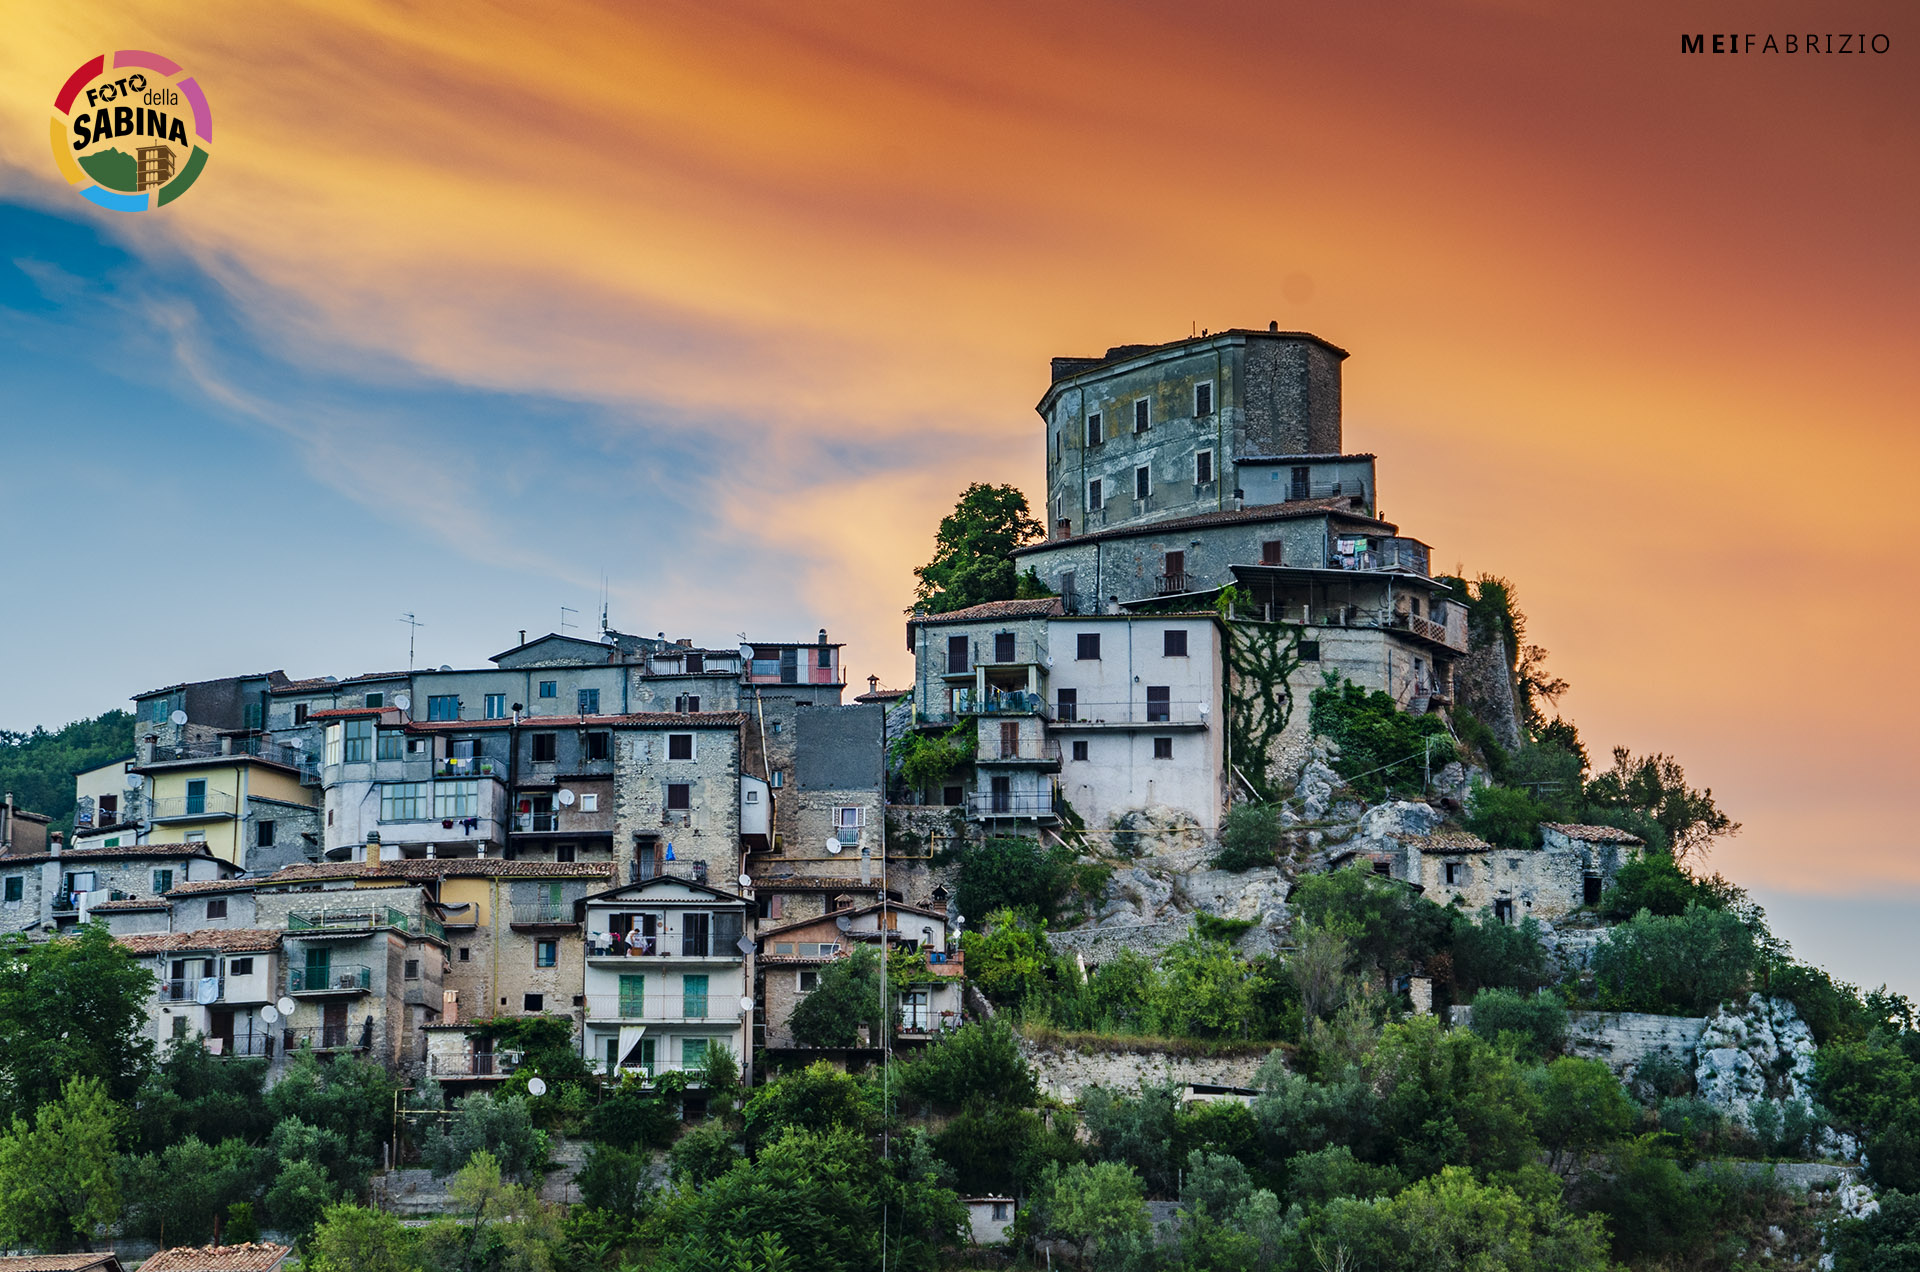 FOTO DELLA SABINA | Castel di Tora - Fabrizio Mei